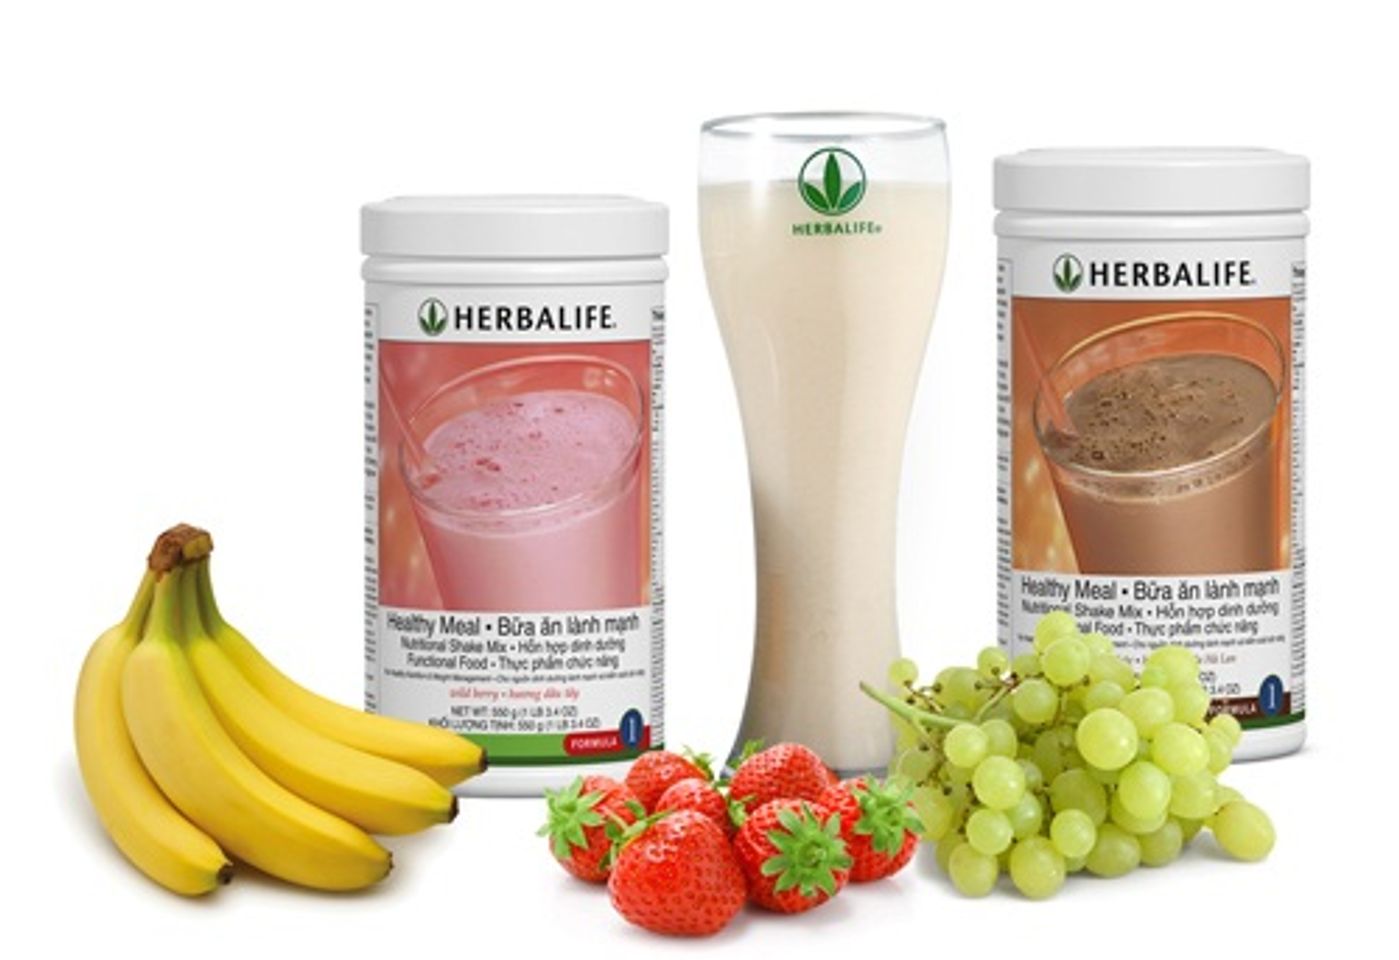 Sữa Herbalife Healthy Meal F1 rất tốt cho những người đang mắc các bệnh về tim mạch, tiểu đường